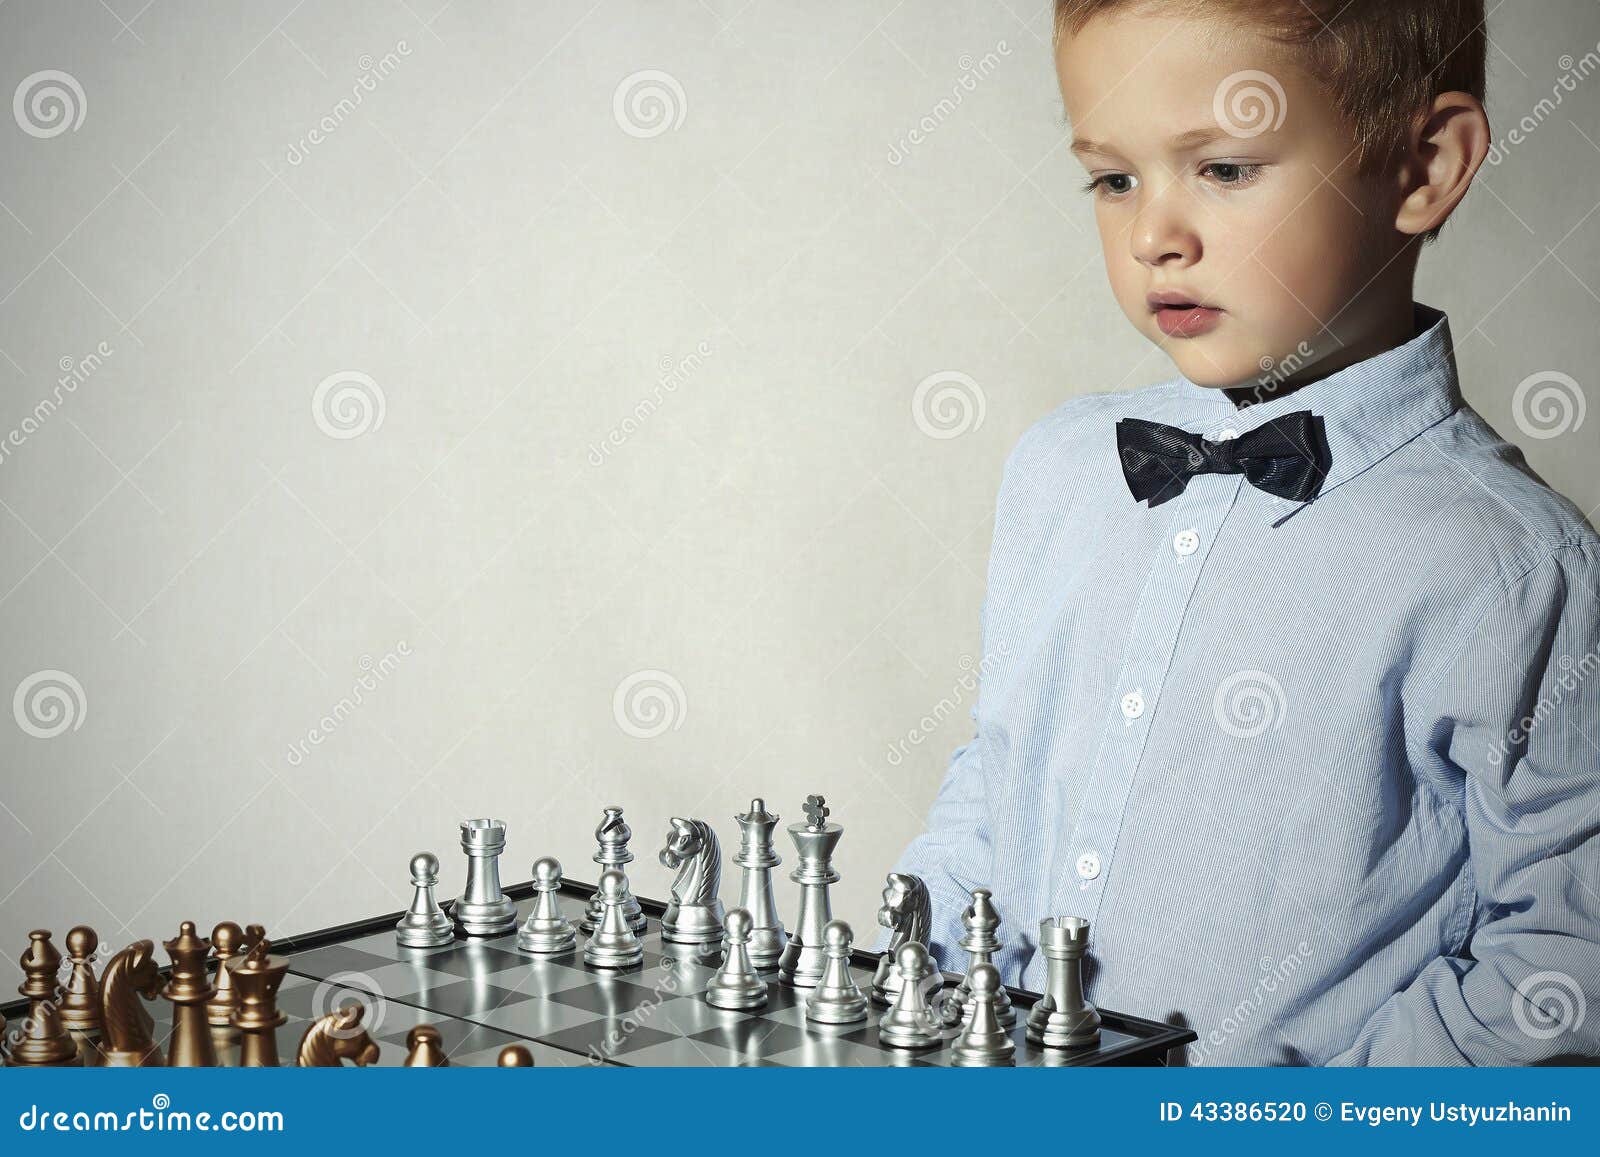 Como Ensinar uma Criança a Jogar Xadrez 